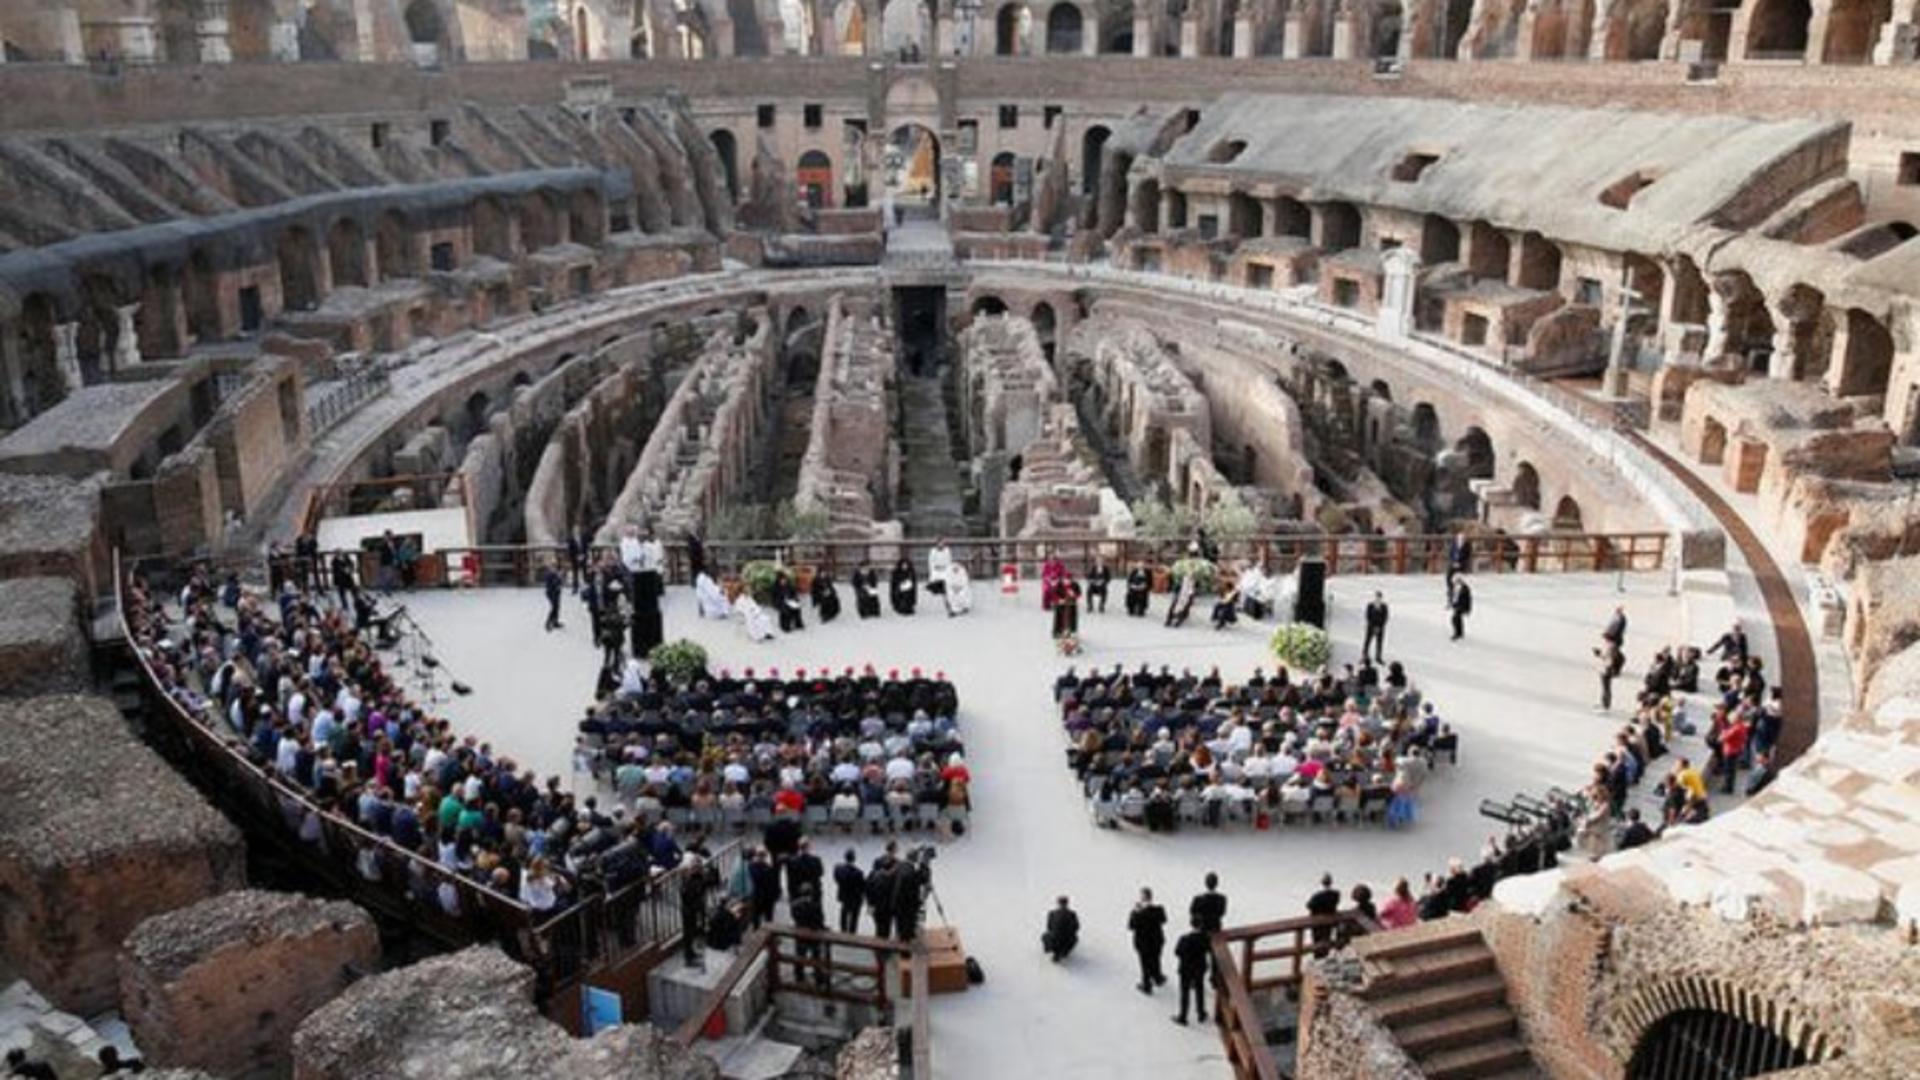 Rugăciune pentru PACE în Ucraina și în lume - Eveniment impresionant la Colosseum, cu lideri religioși și Papa Francisc